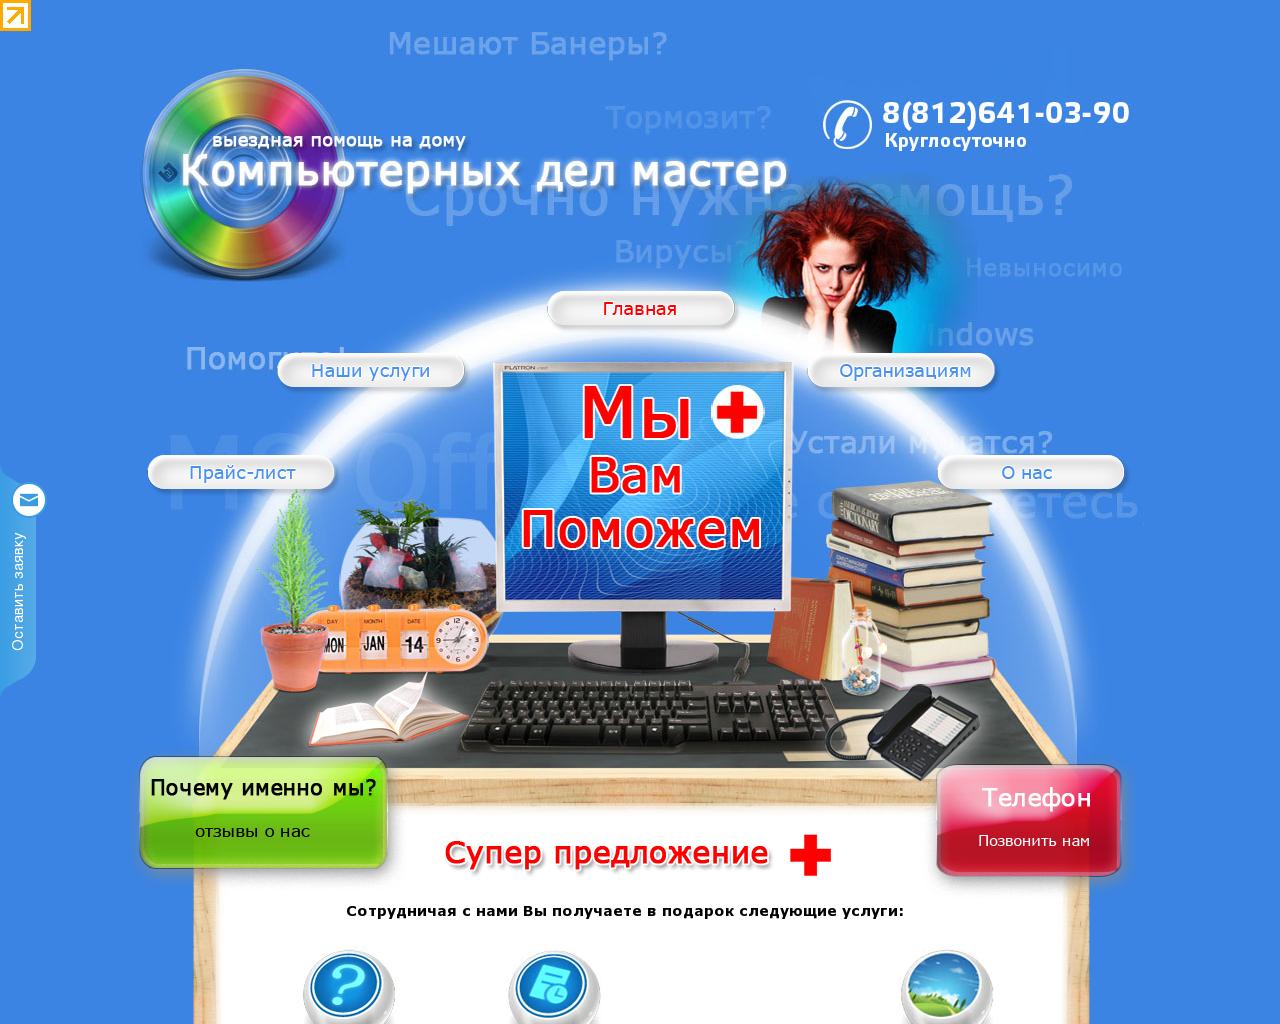 Изображение сайта k-dm.ru в разрешении 1280x1024